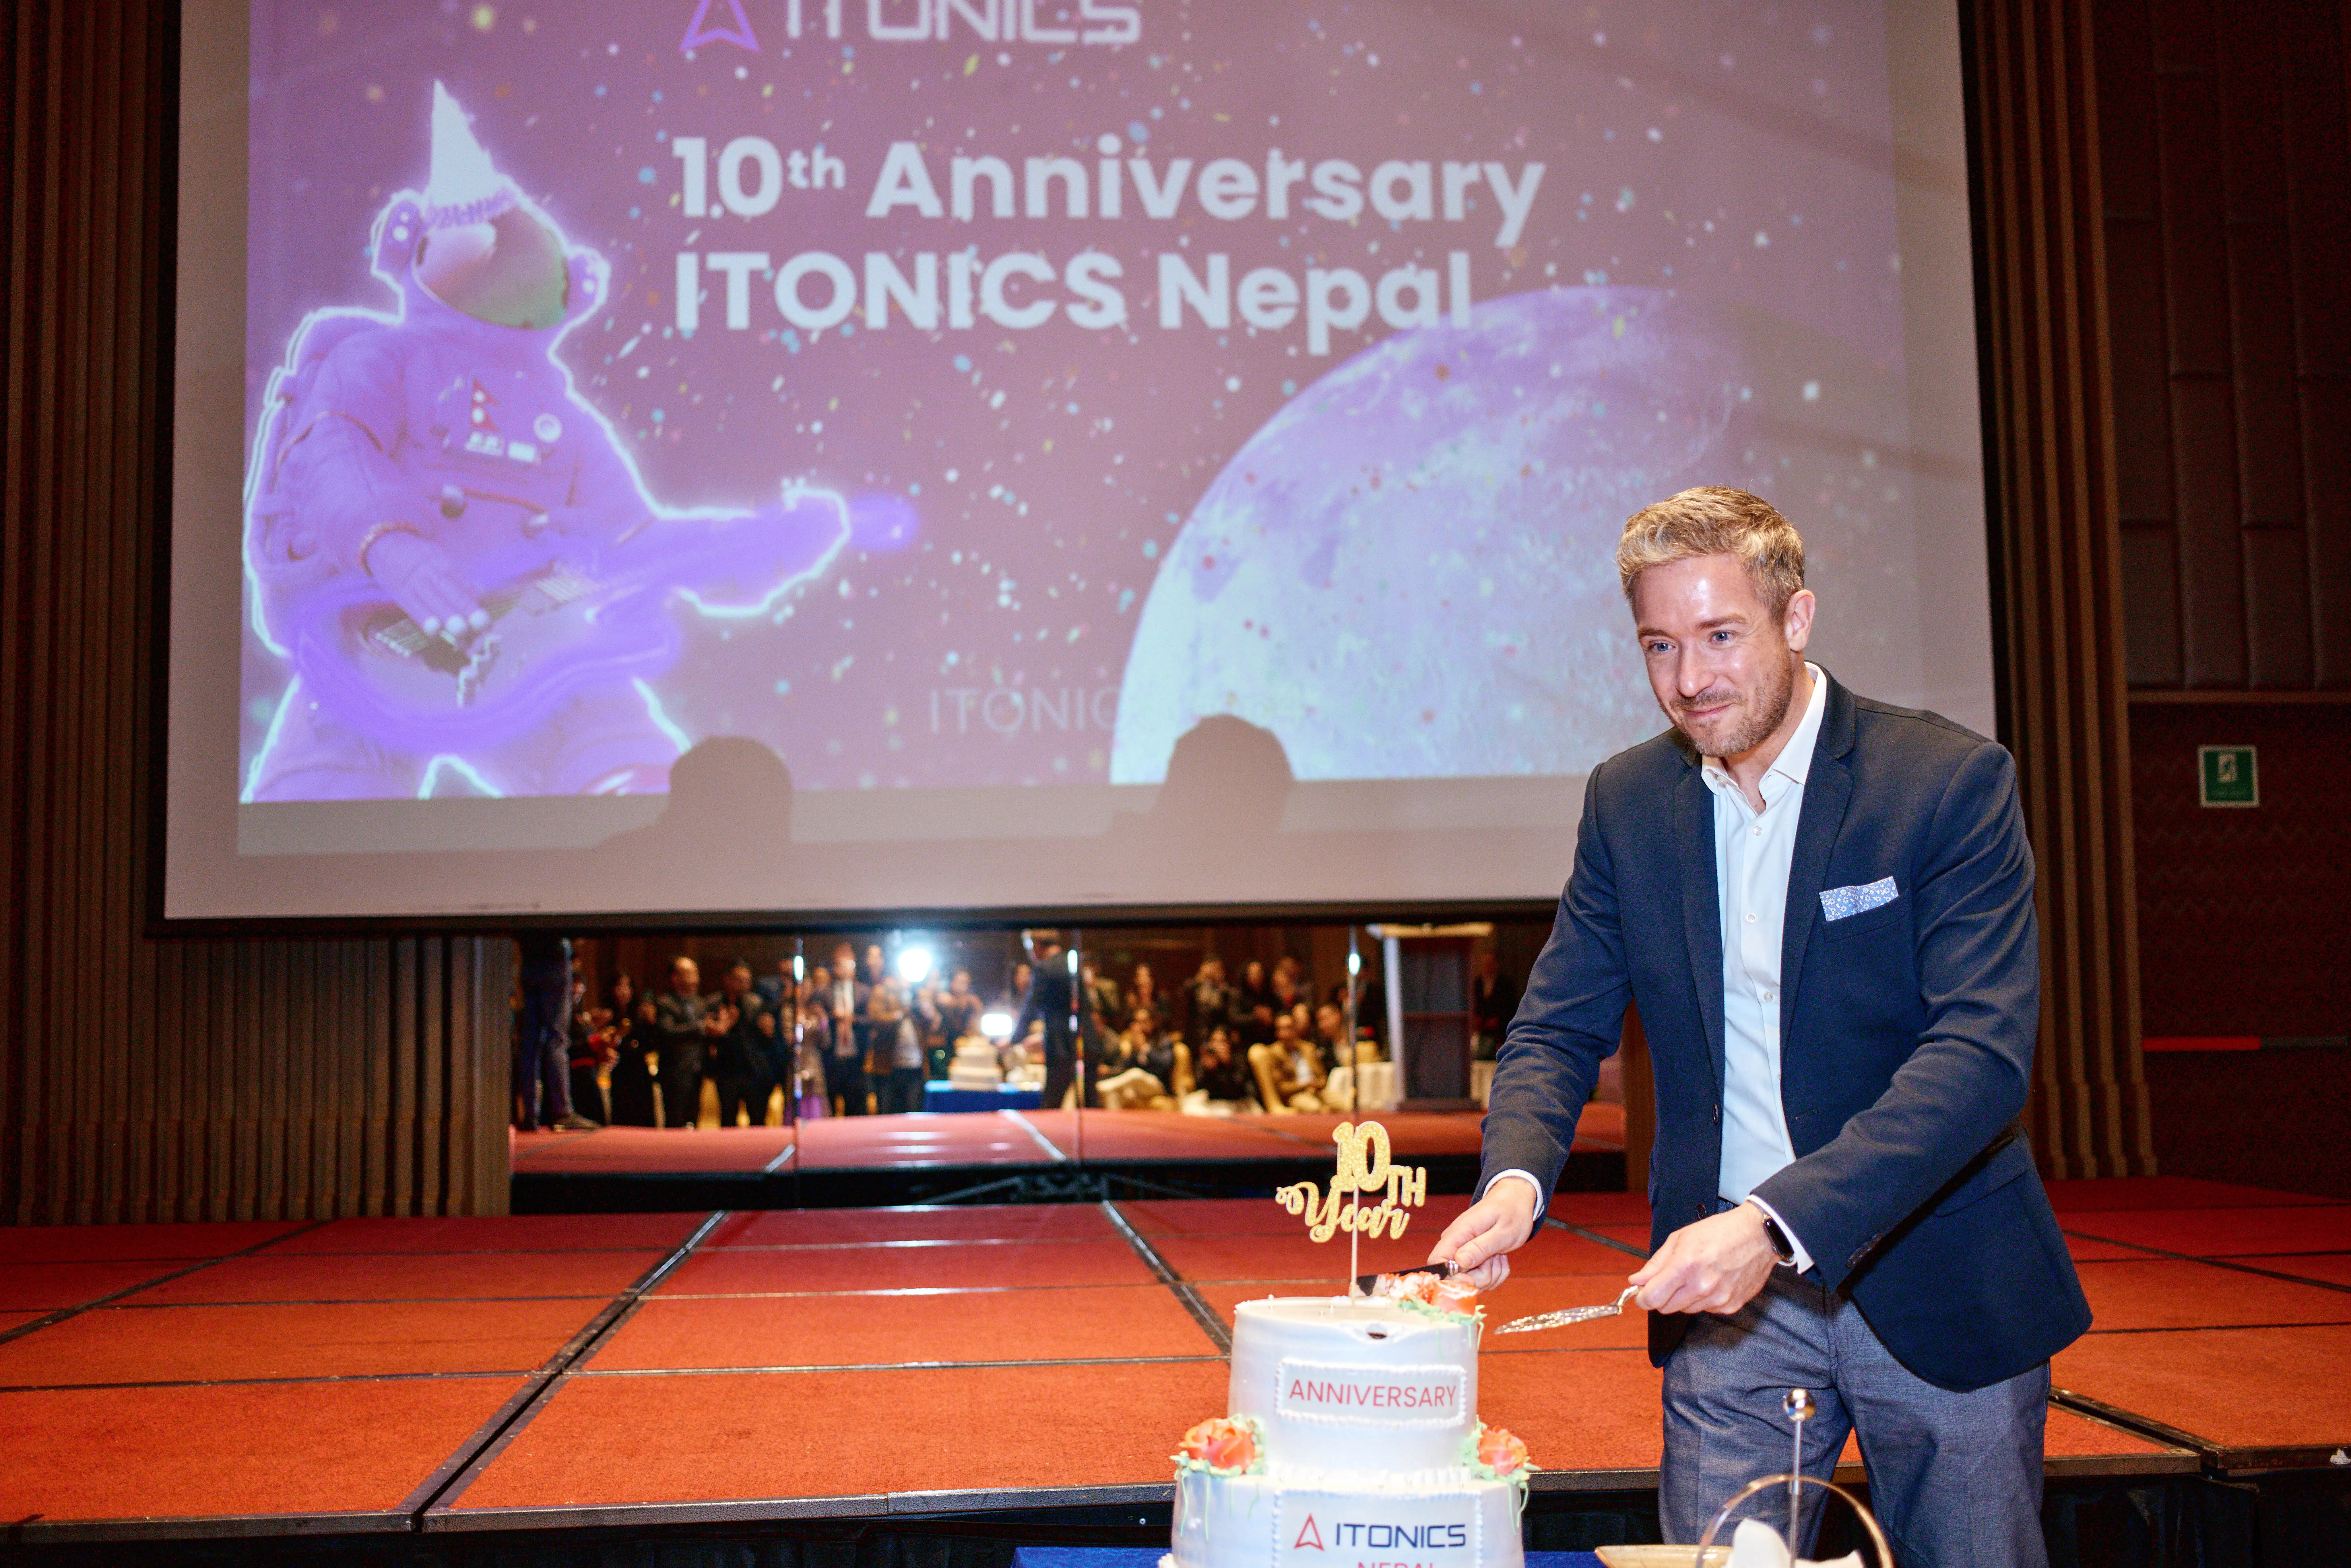 Featured image: ITONICS Nepal Celebrates 10th Anniversary